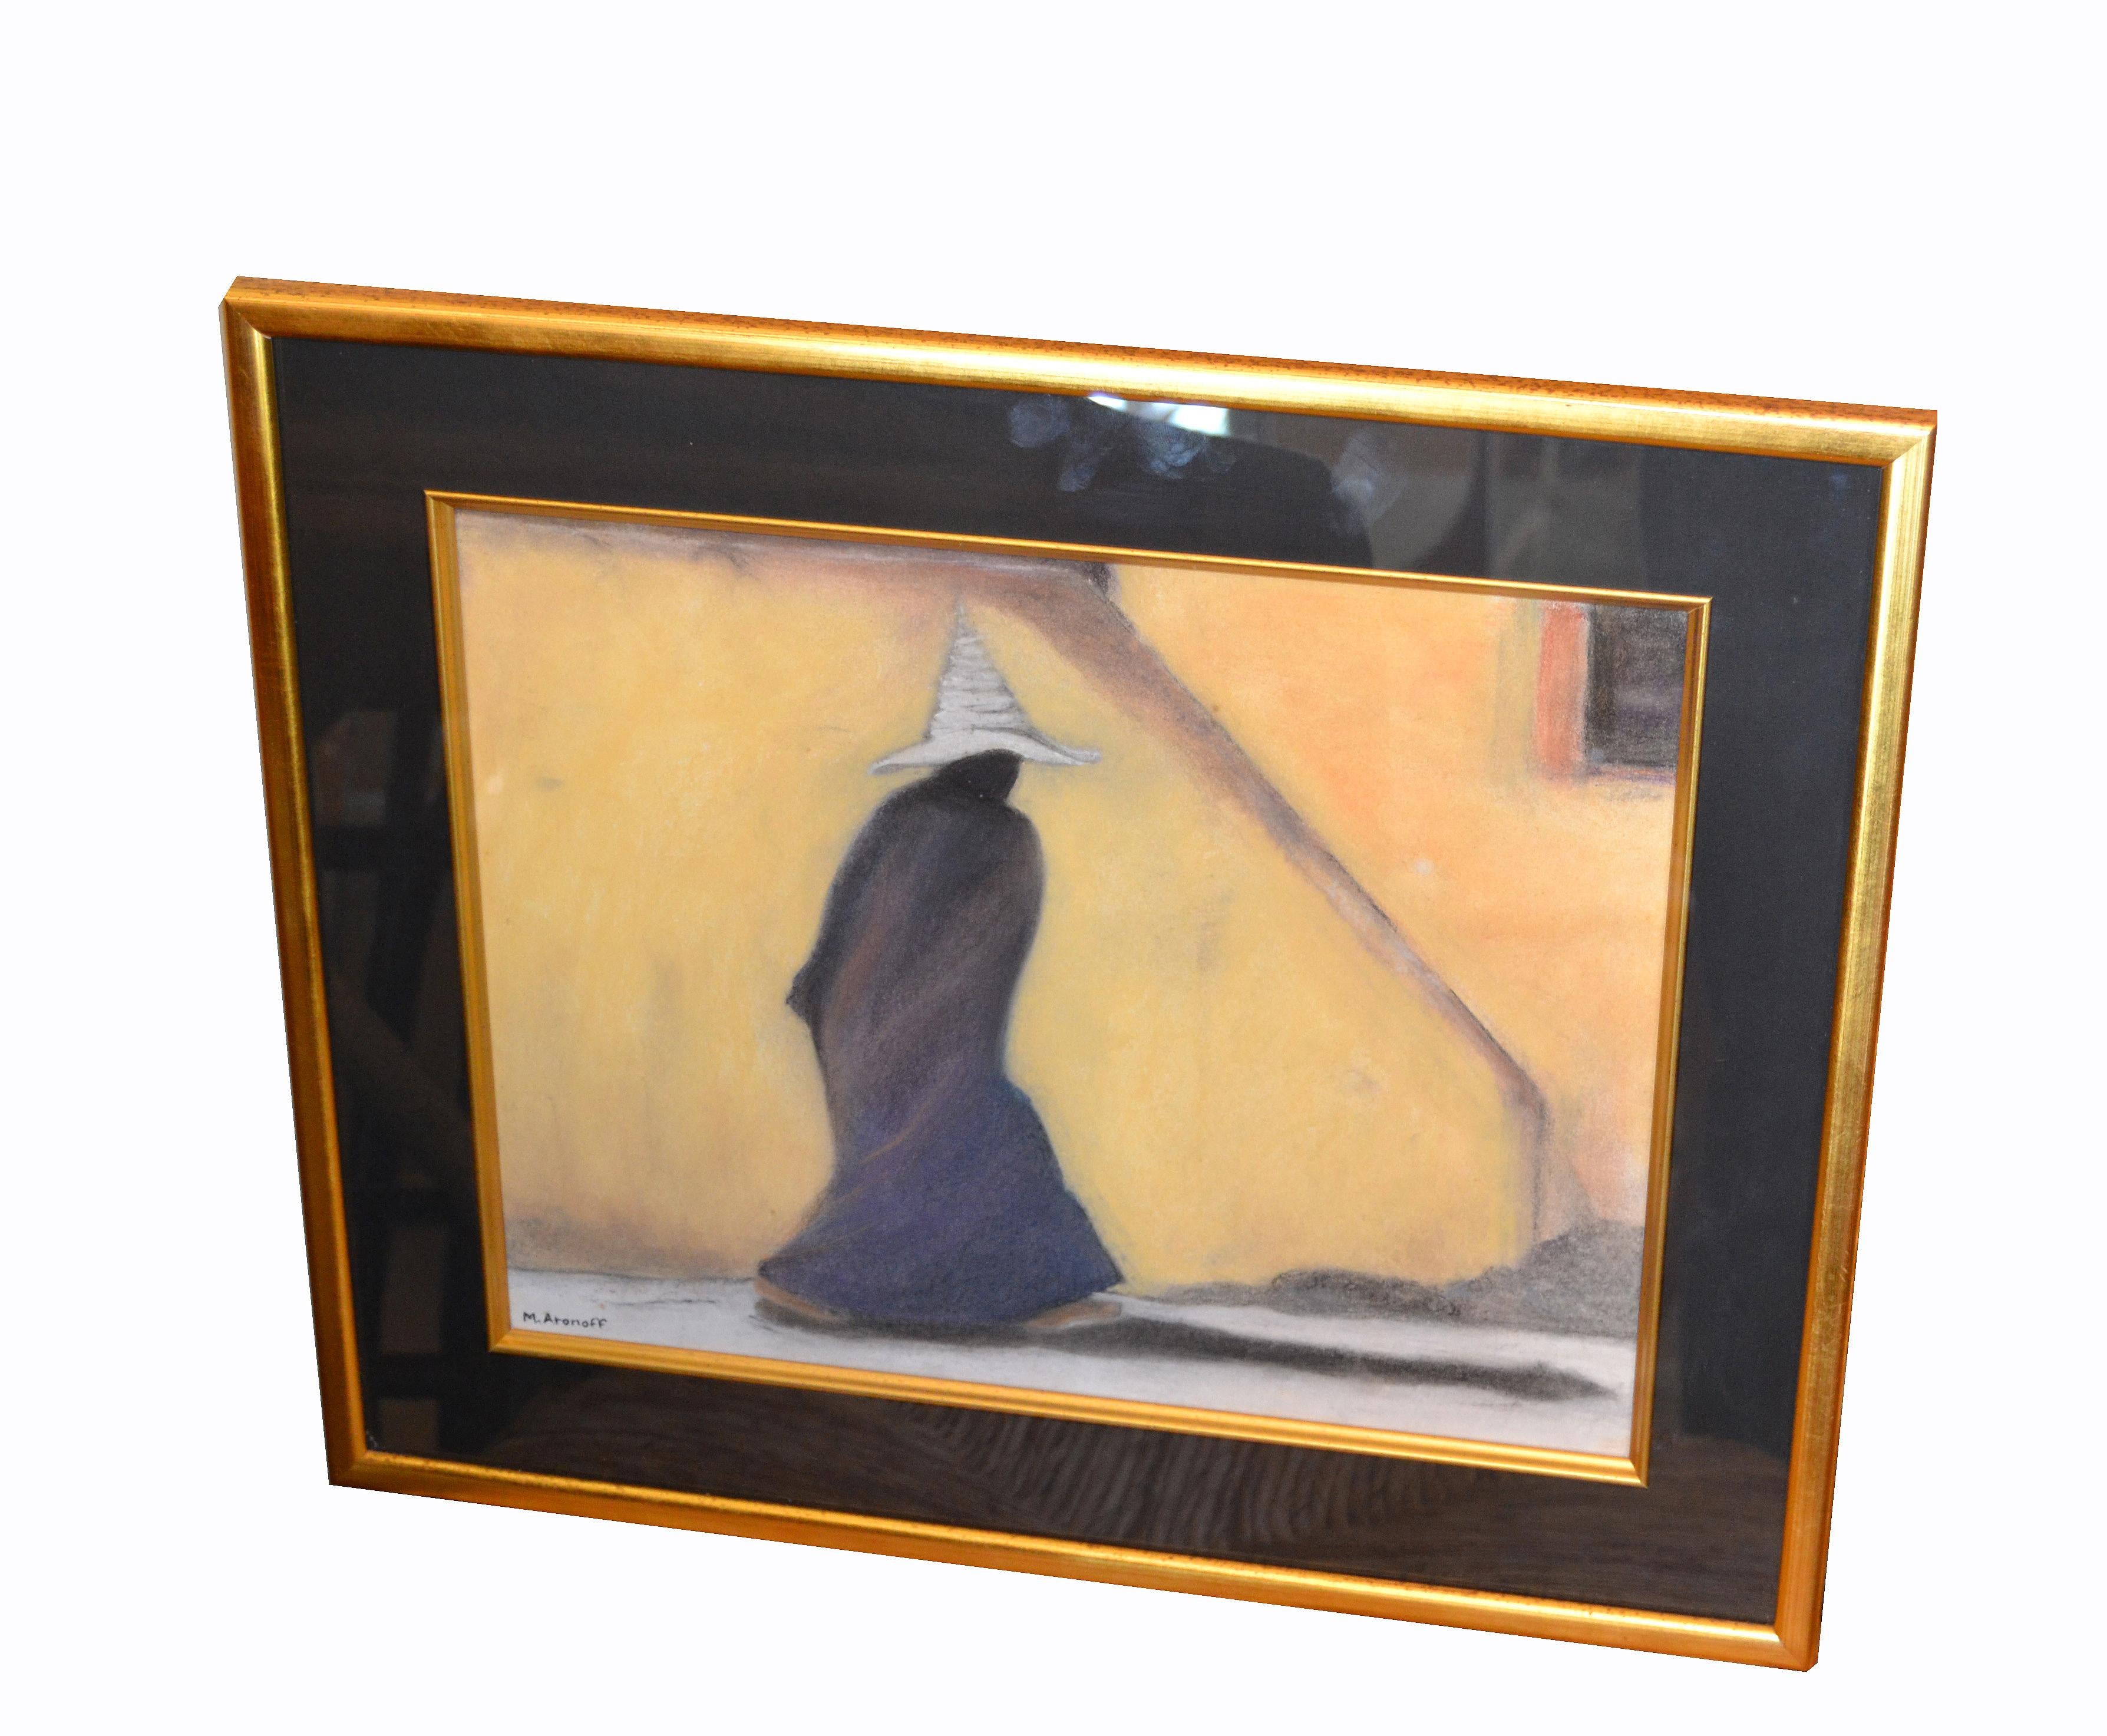 Étude d'artiste originale encadrée de style moderne du milieu du siècle, réalisée à la craie et au crayon, d'un homme en noir avec un chapeau blanc.
Encadrement professionnel en bois doré.
Signé par l'artiste.
      